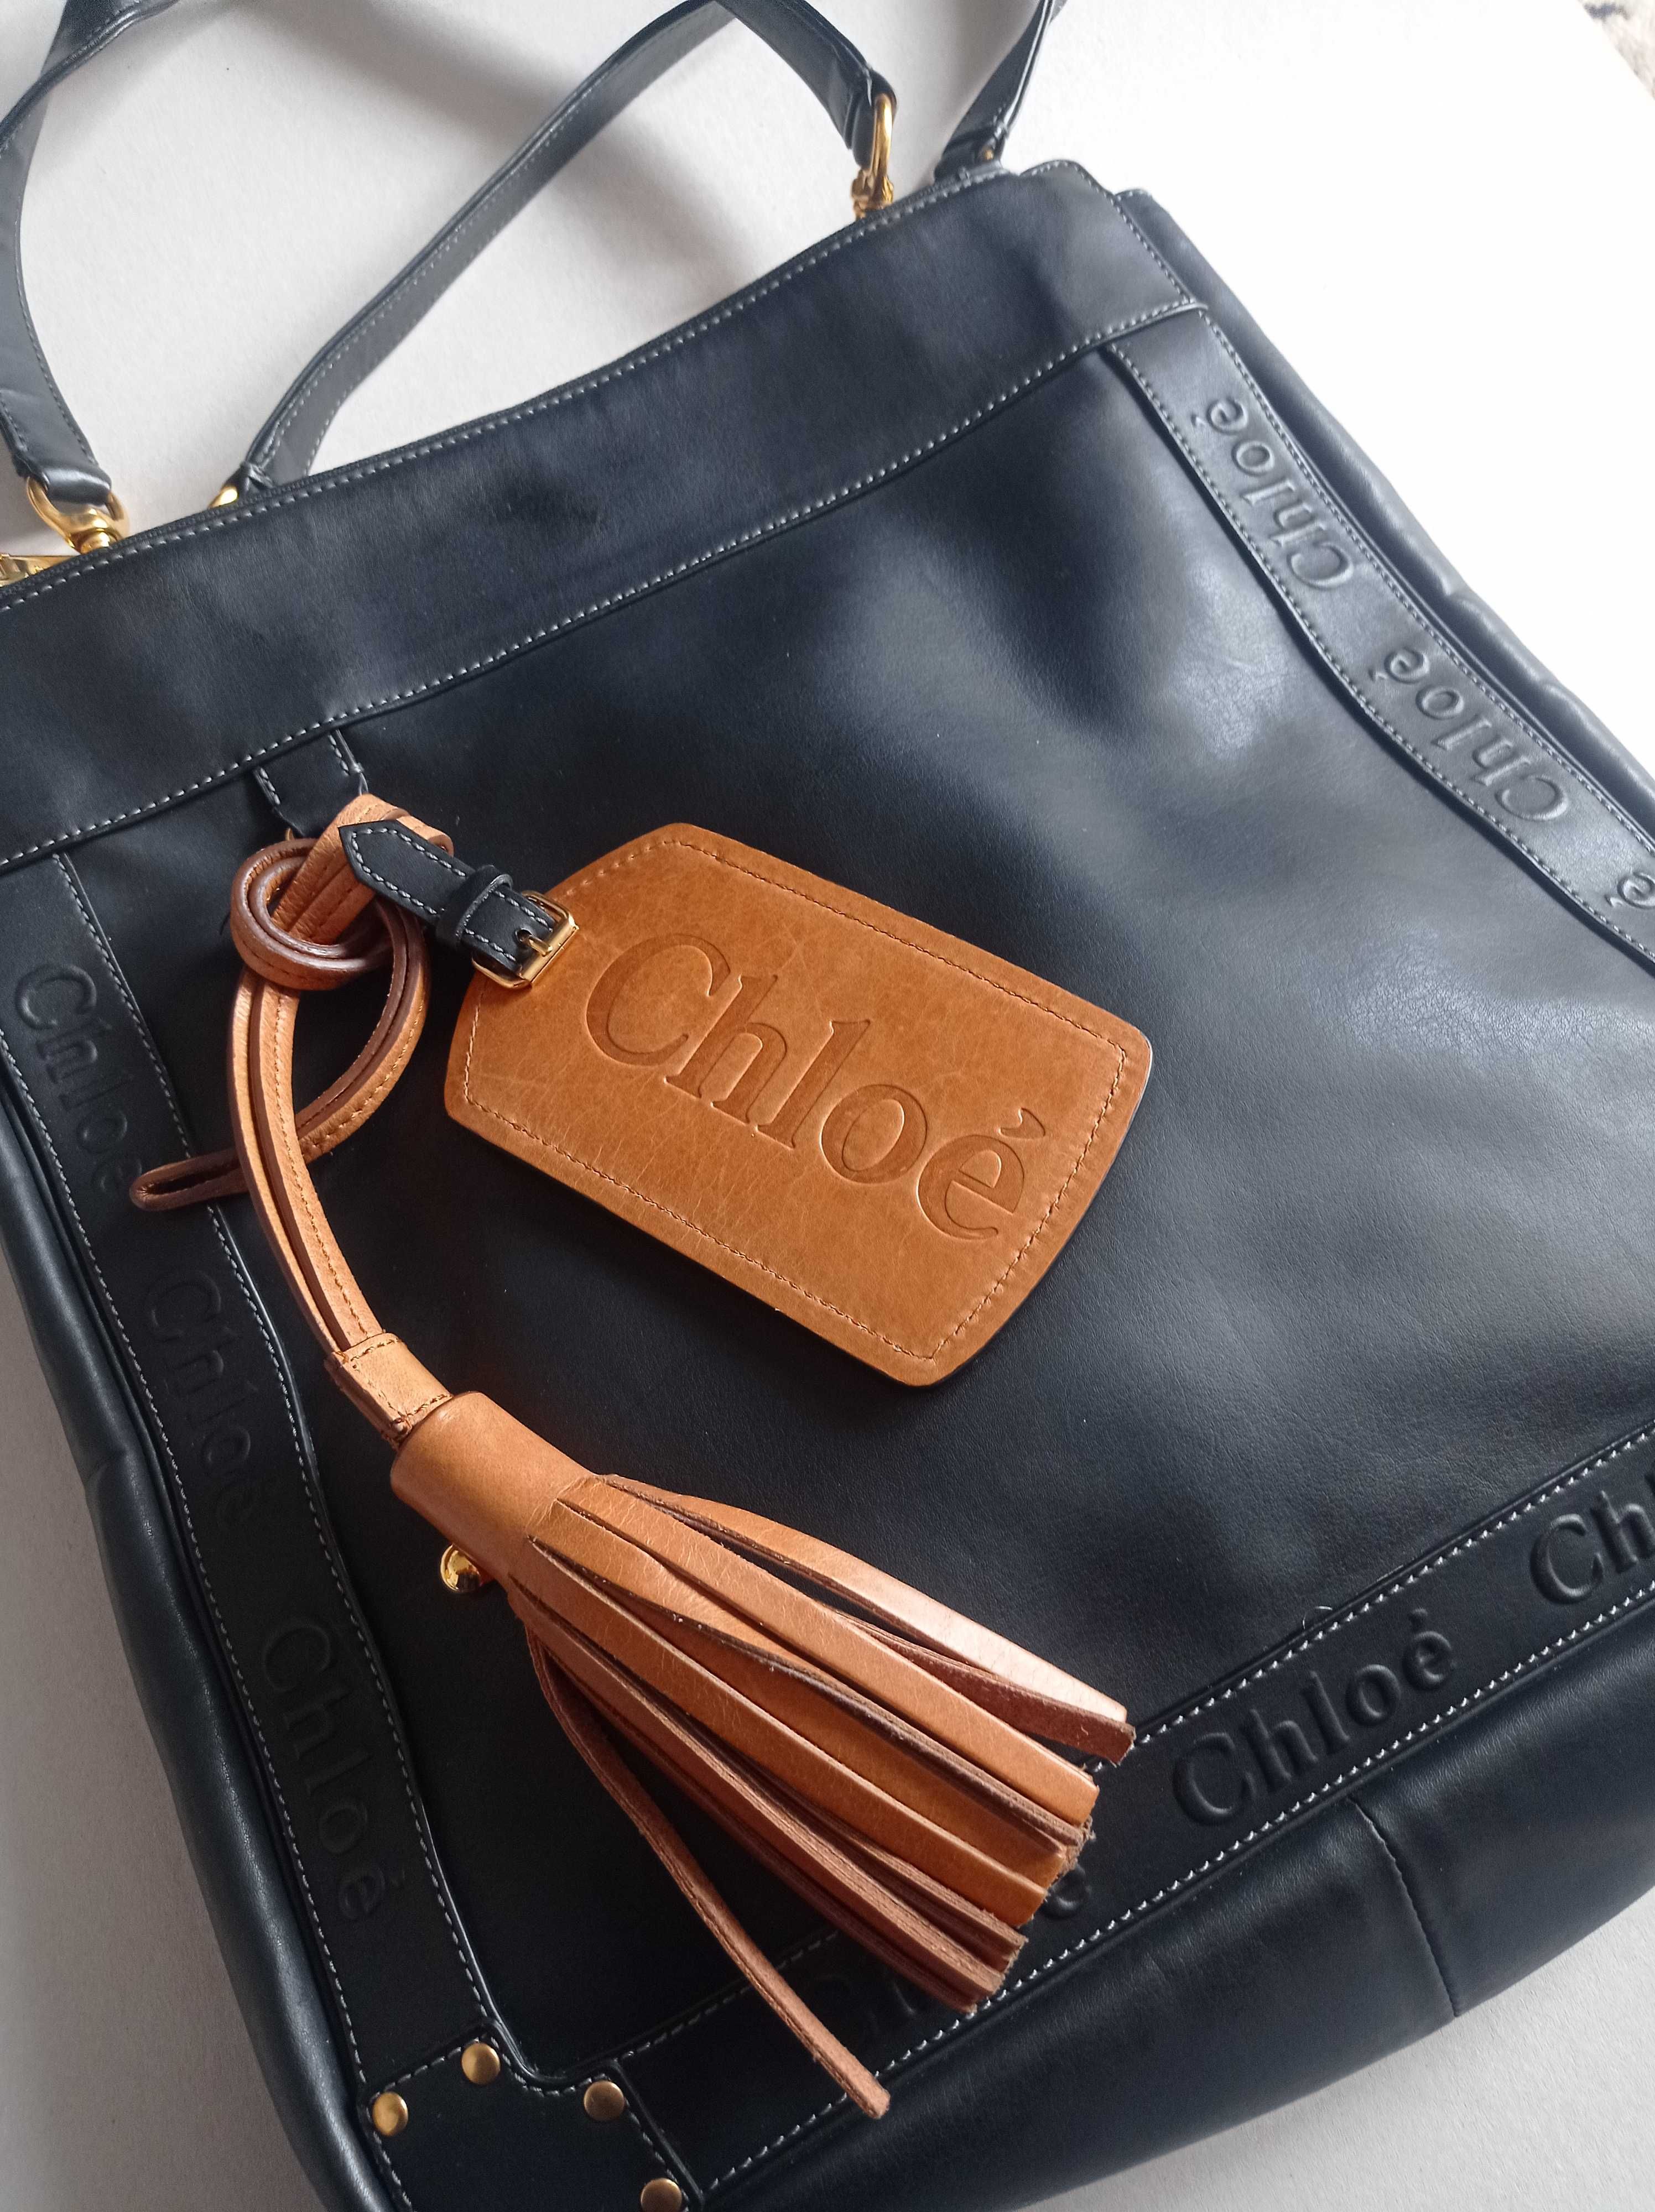 Оригинална чанта Chloe, кожа